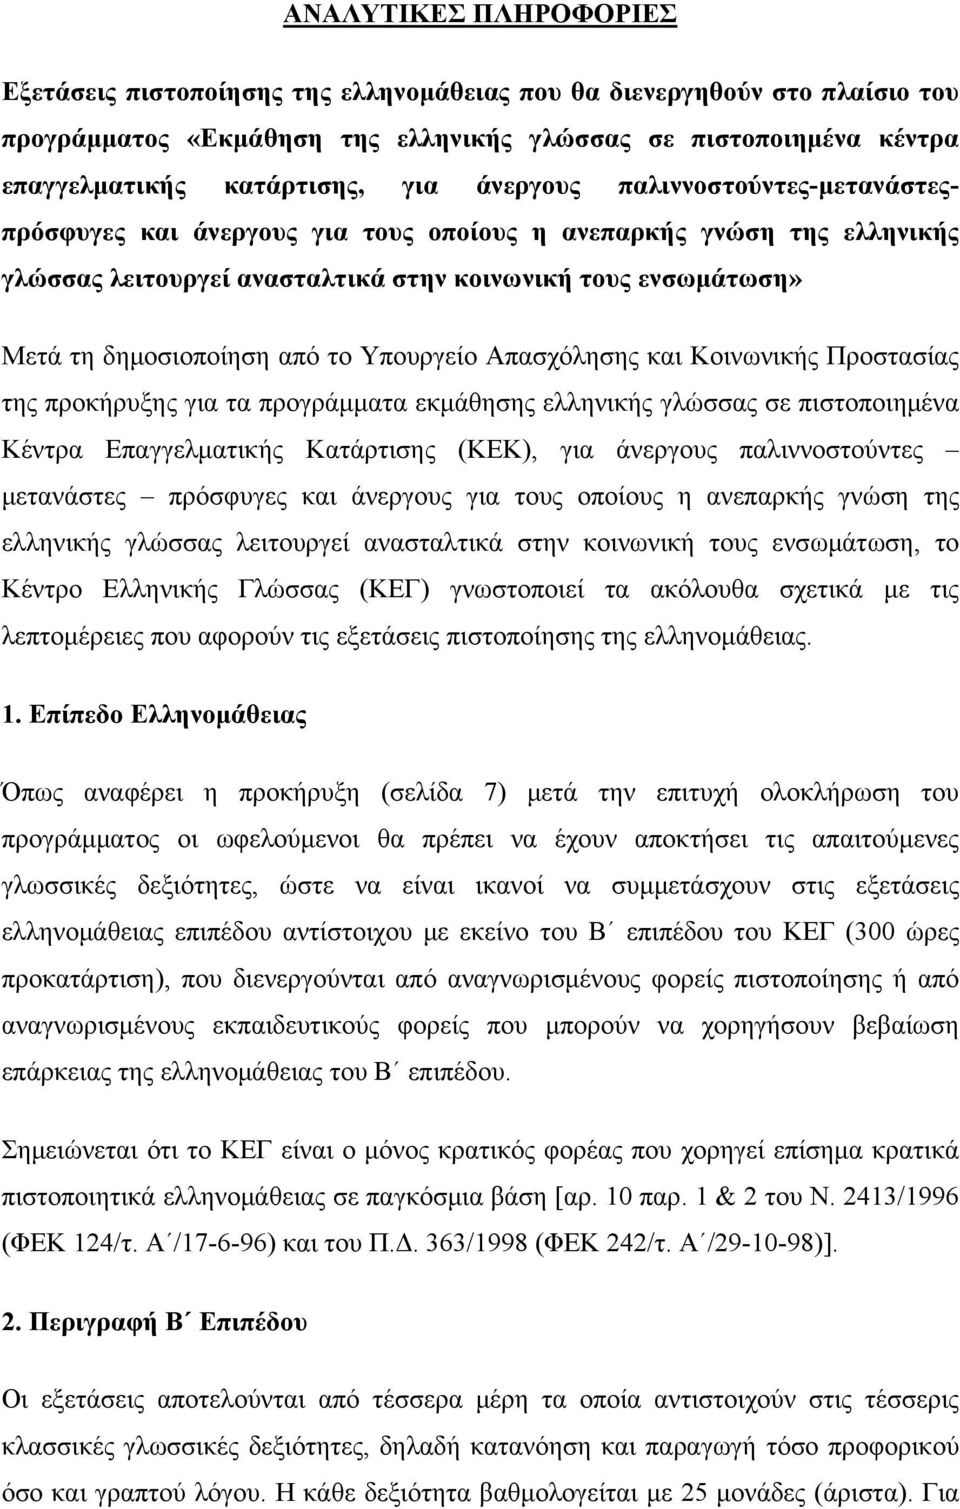 Υπουργείο Απασχόλησης και Κοινωνικής Προστασίας της προκήρυξης για τα προγράμματα εκμάθησης ελληνικής γλώσσας σε πιστοποιημένα Κέντρα Επαγγελματικής Κατάρτισης (ΚΕΚ), για άνεργους παλιννοστούντες